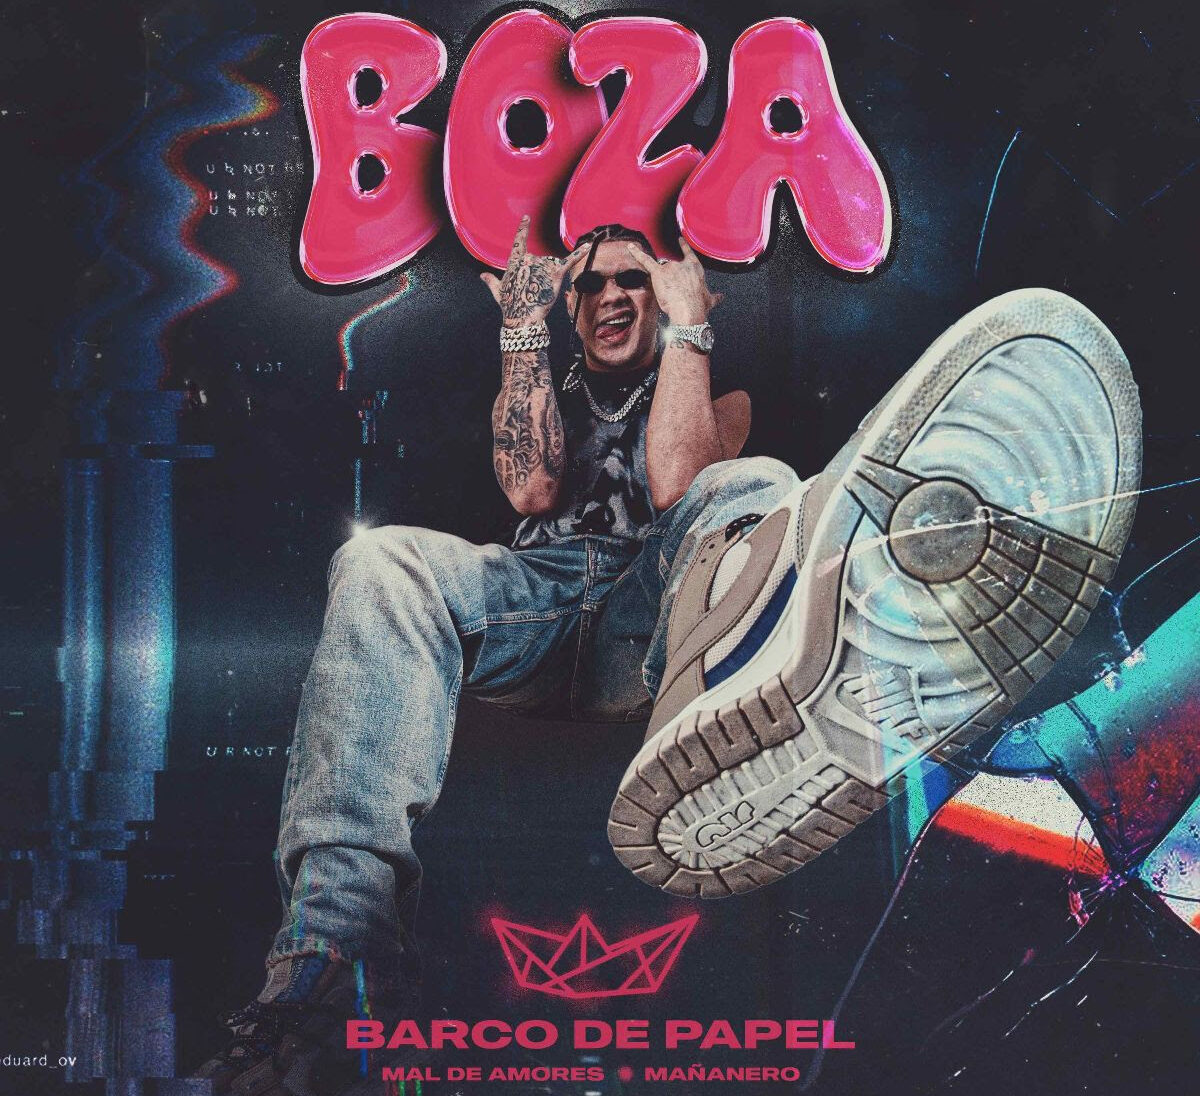 Boza muestra sus cicatrices de amor en su nuevo sencillo “Barco de papel”